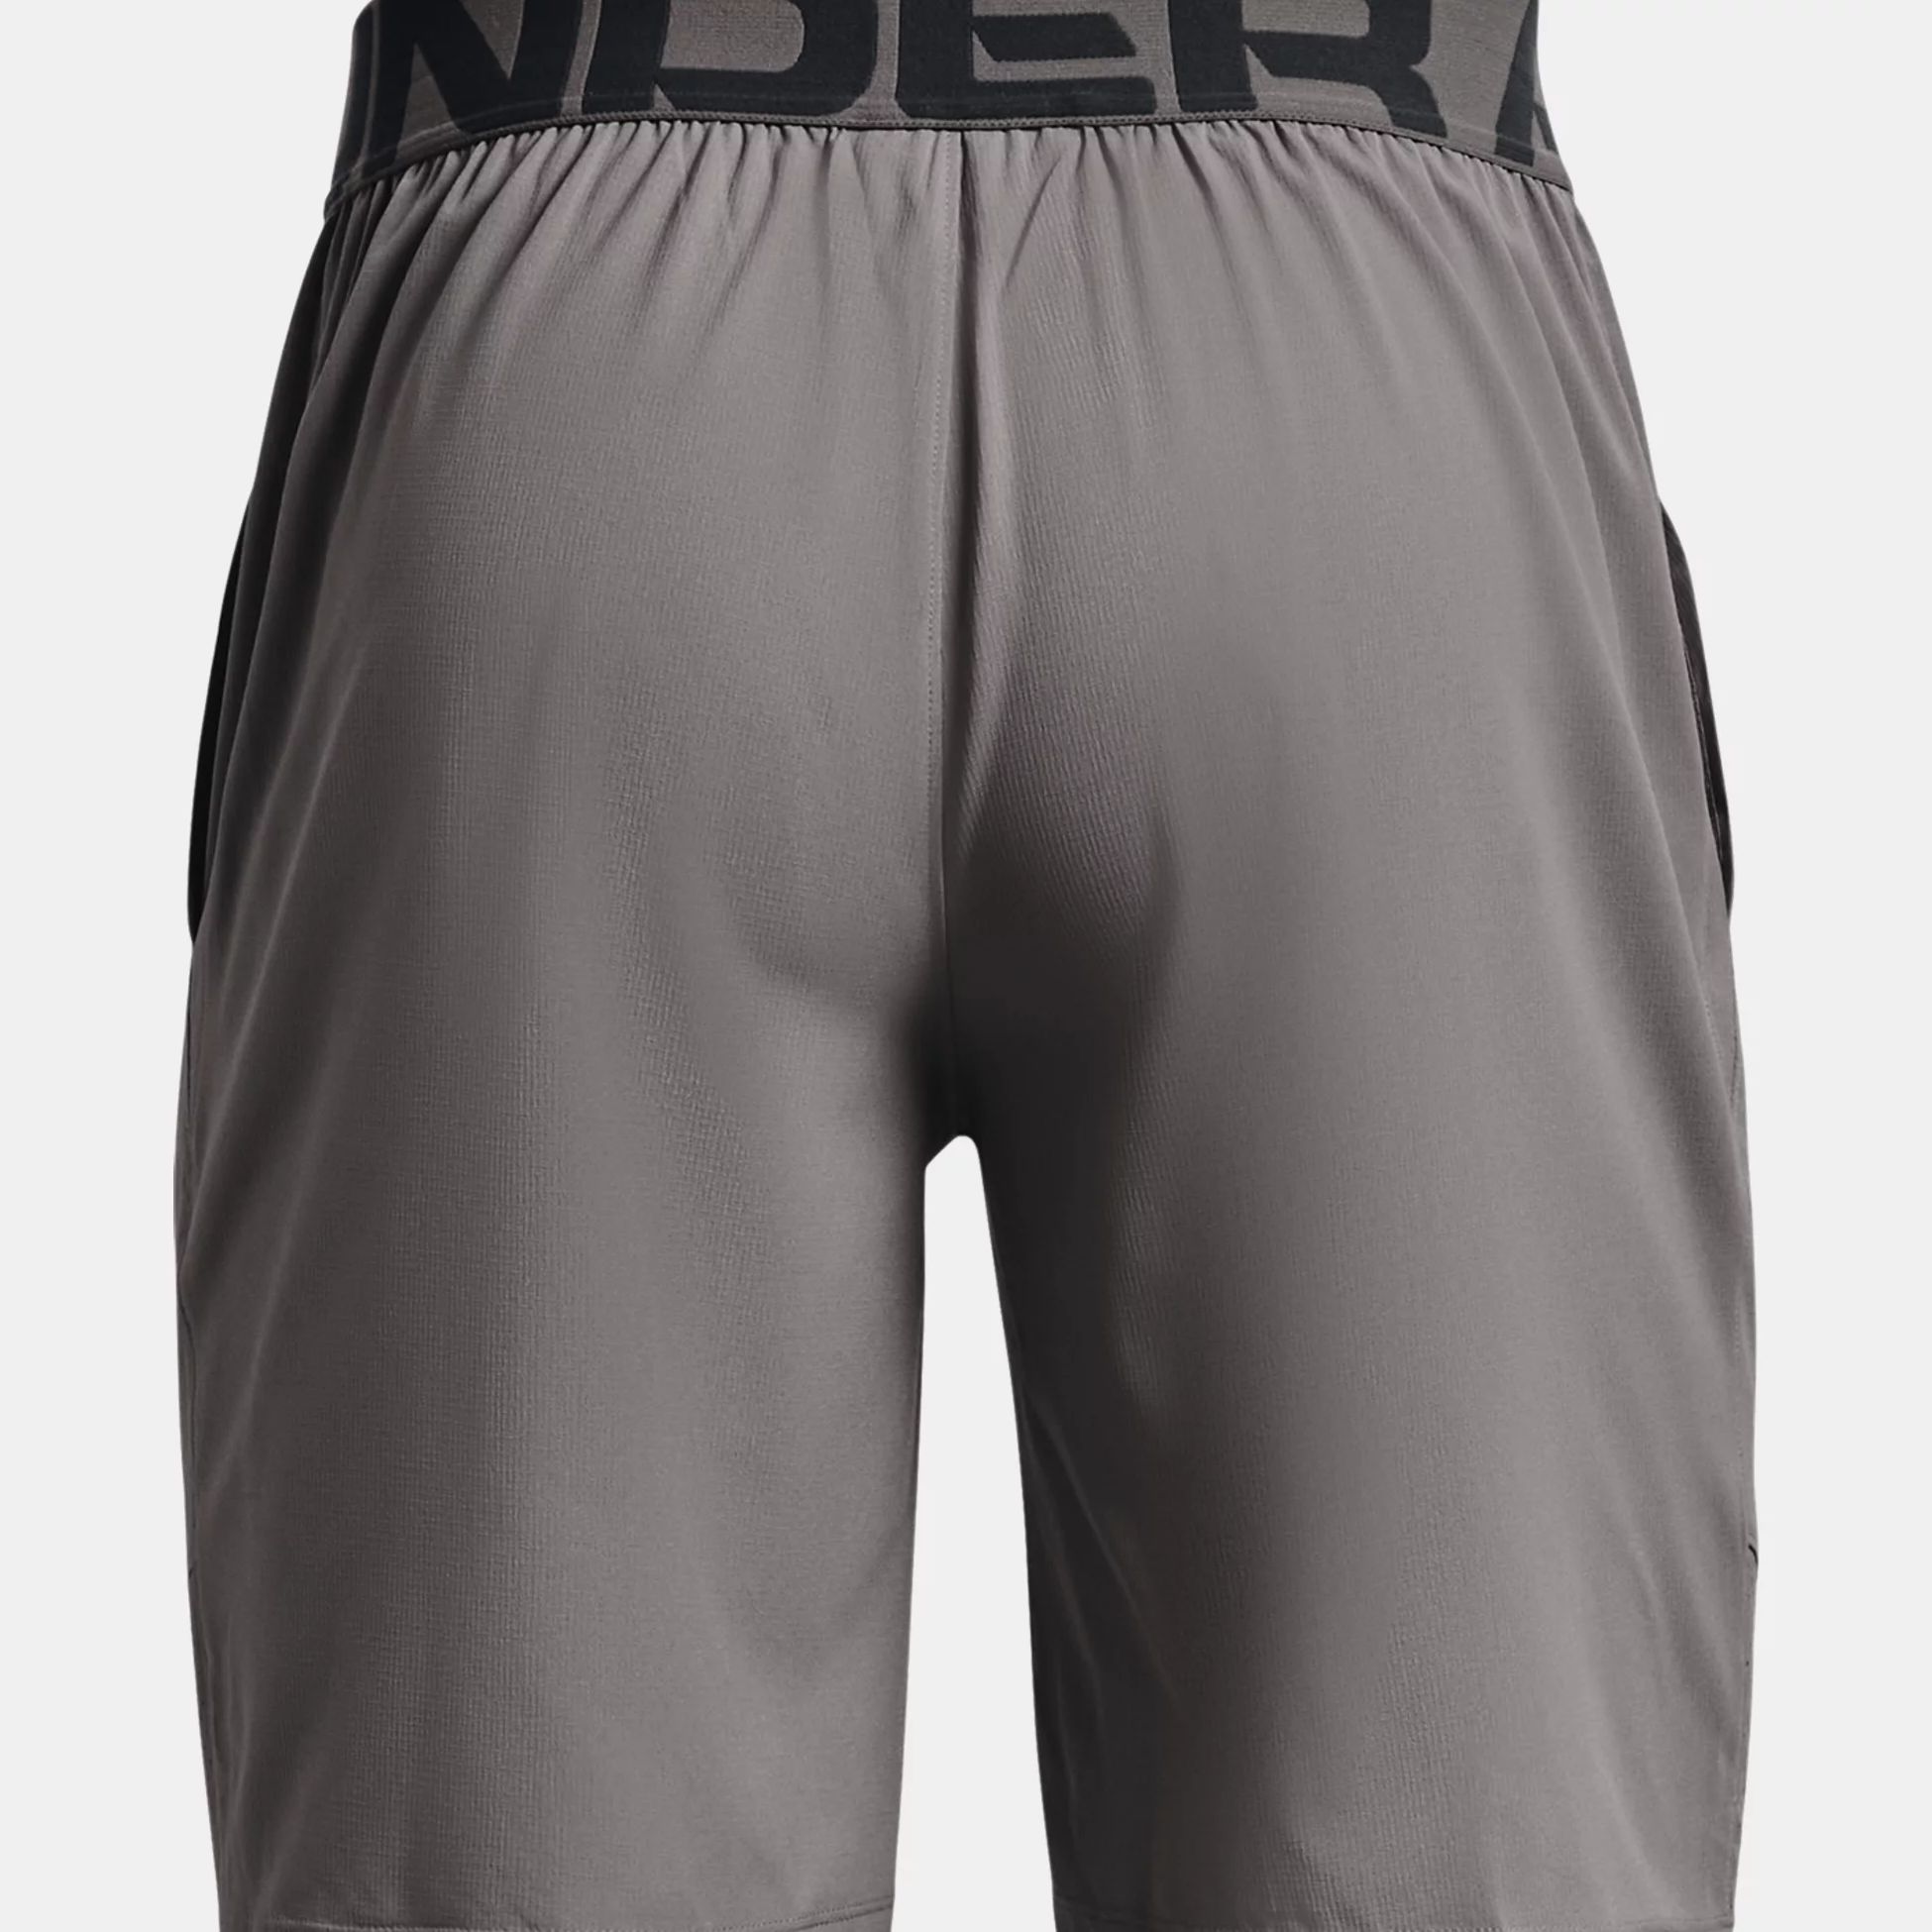 Shorts -  under armour UA Vanish Woven Shorts